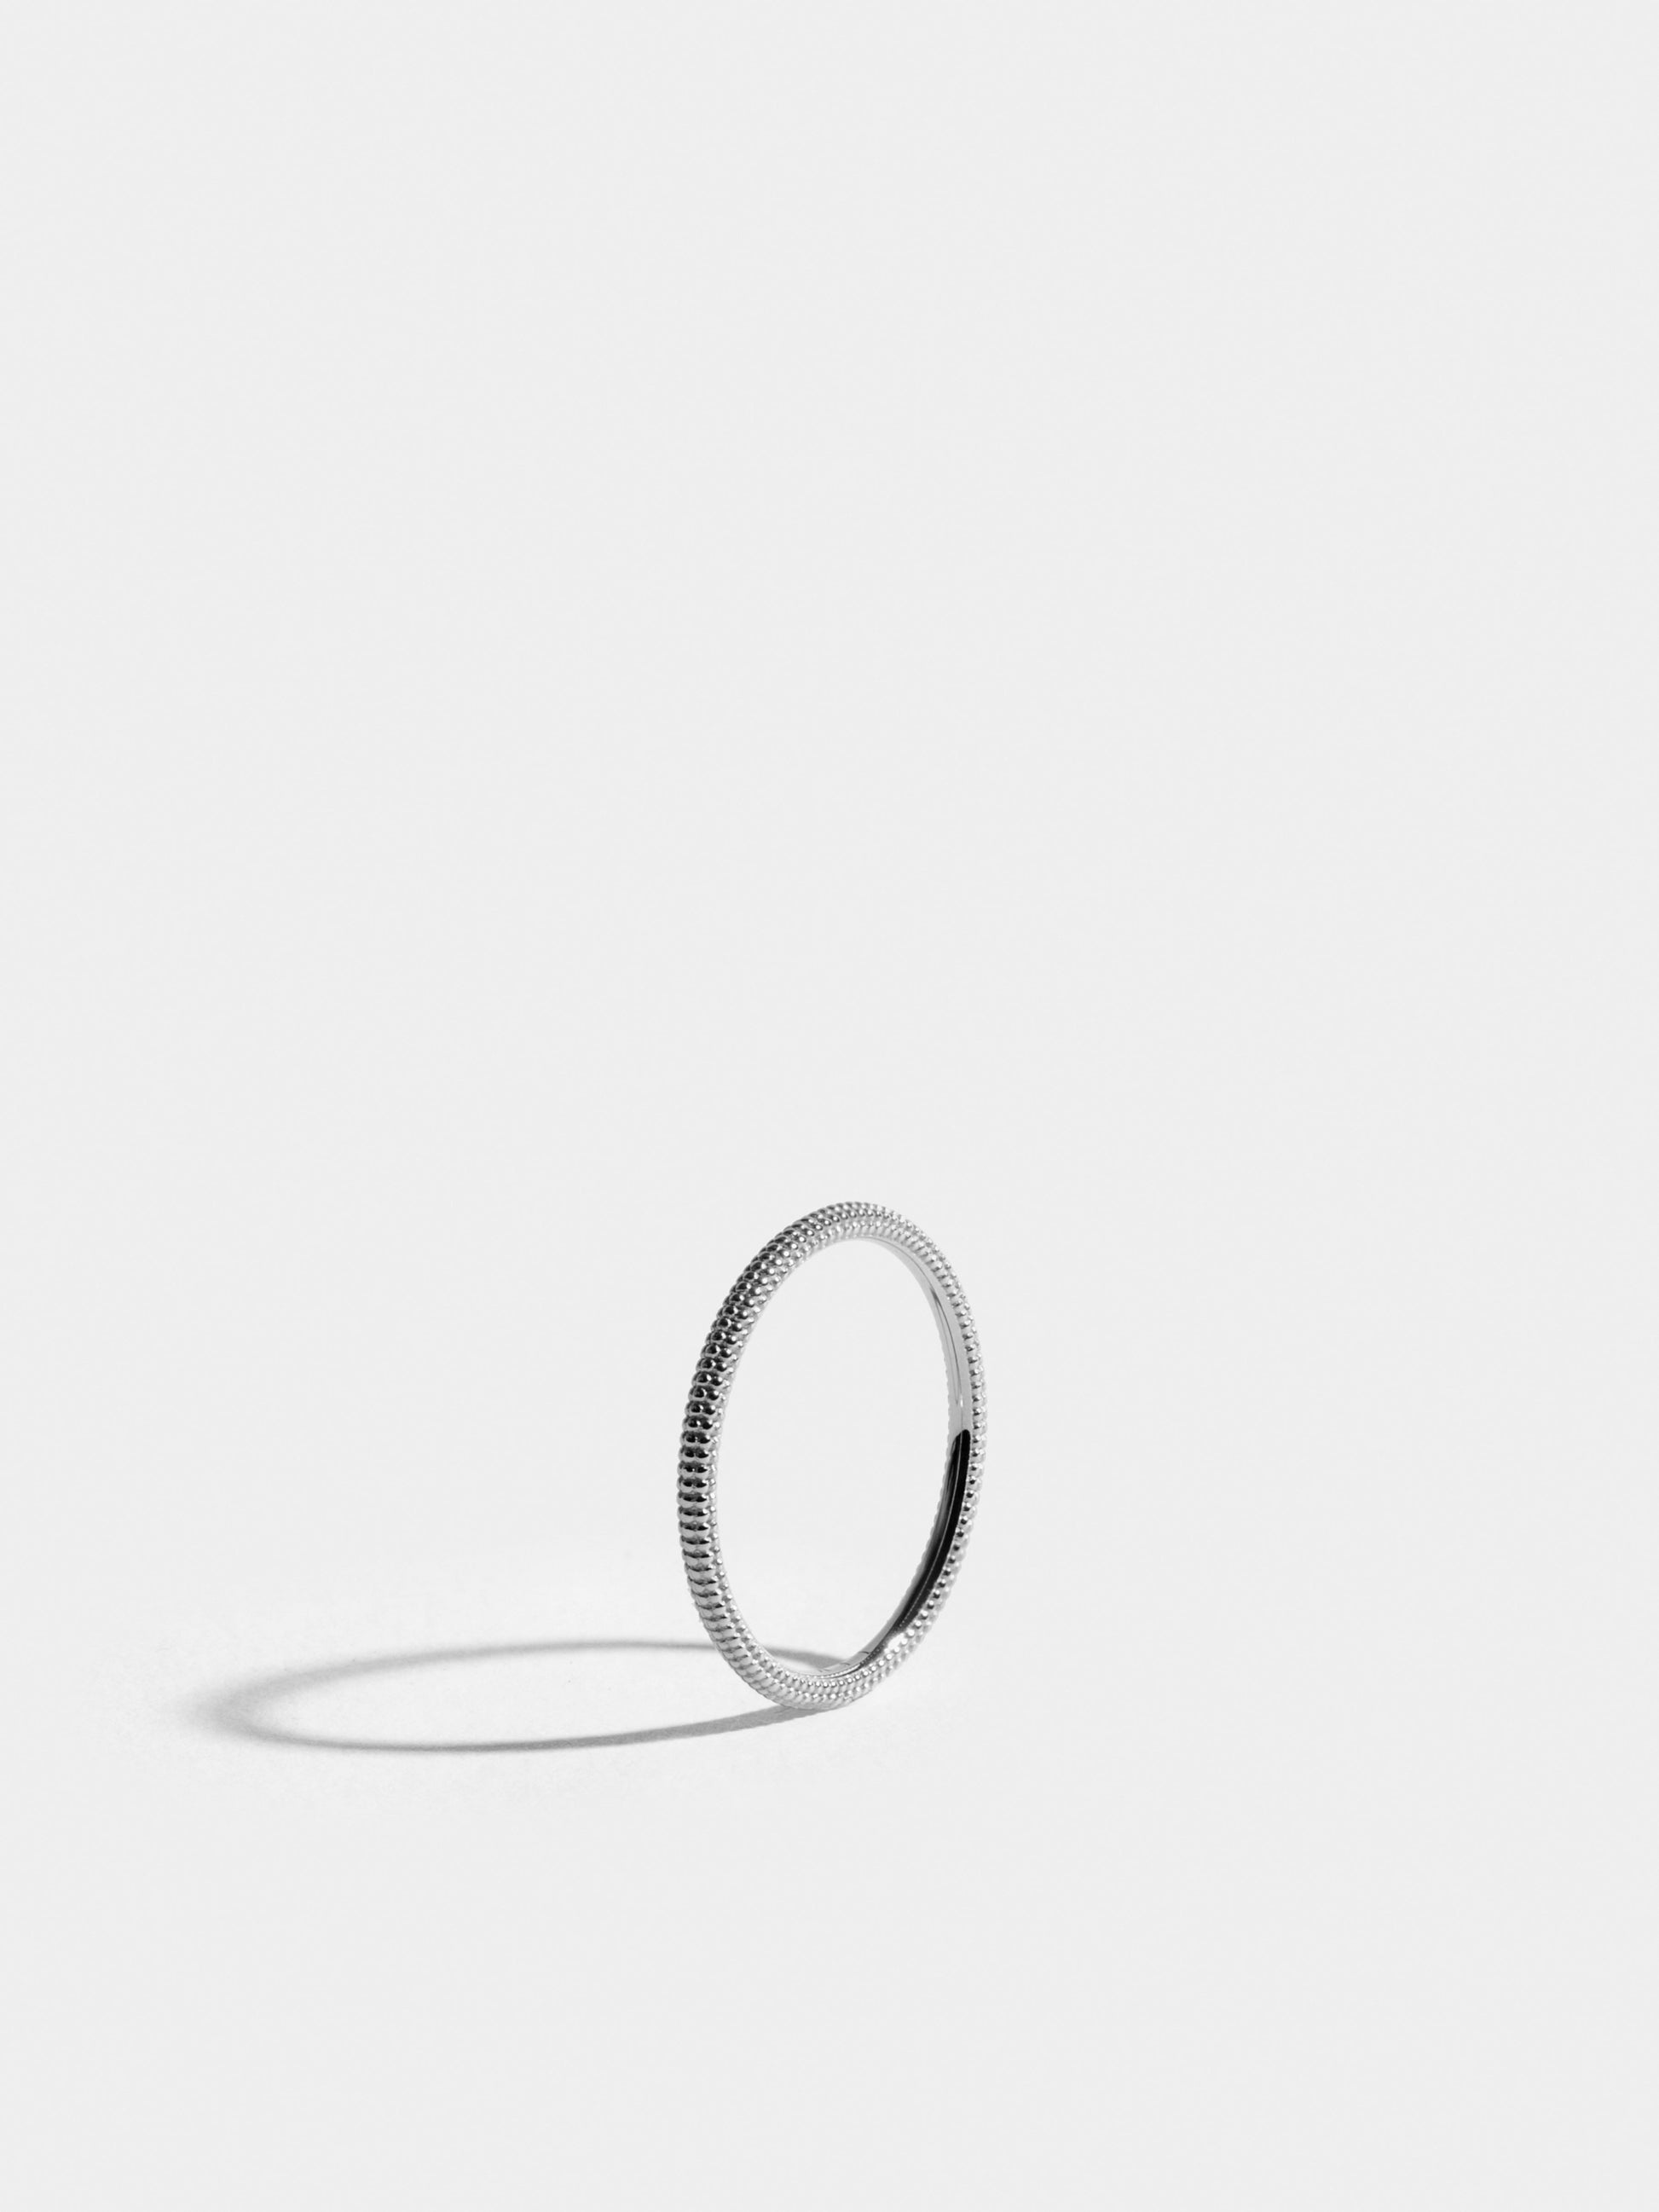 Fair trade Ring: Anagramme “millegrains” Ring aus Weissgold, stehend